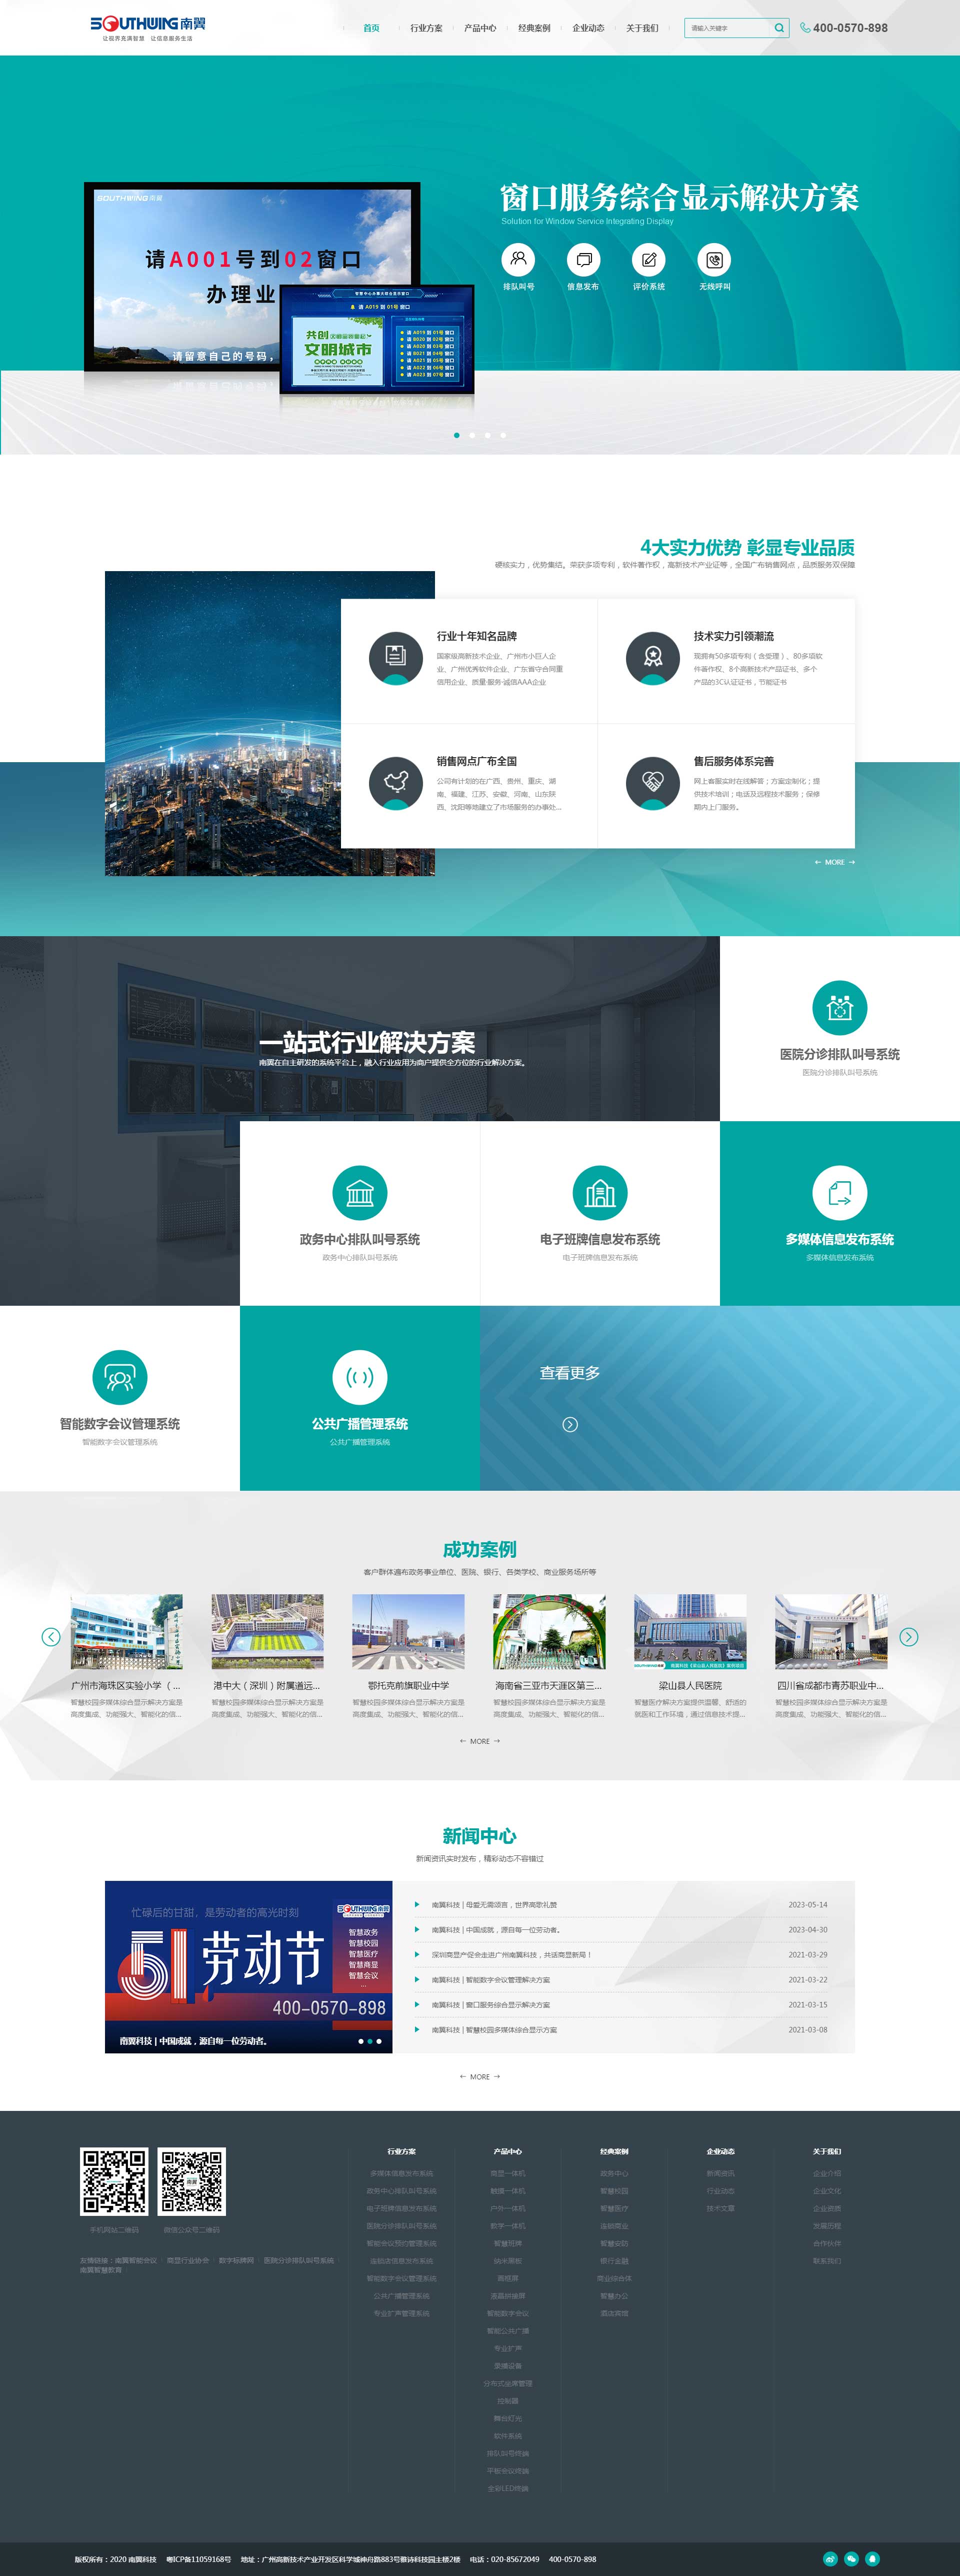 广州南翼信息科技有限公司 (图1)